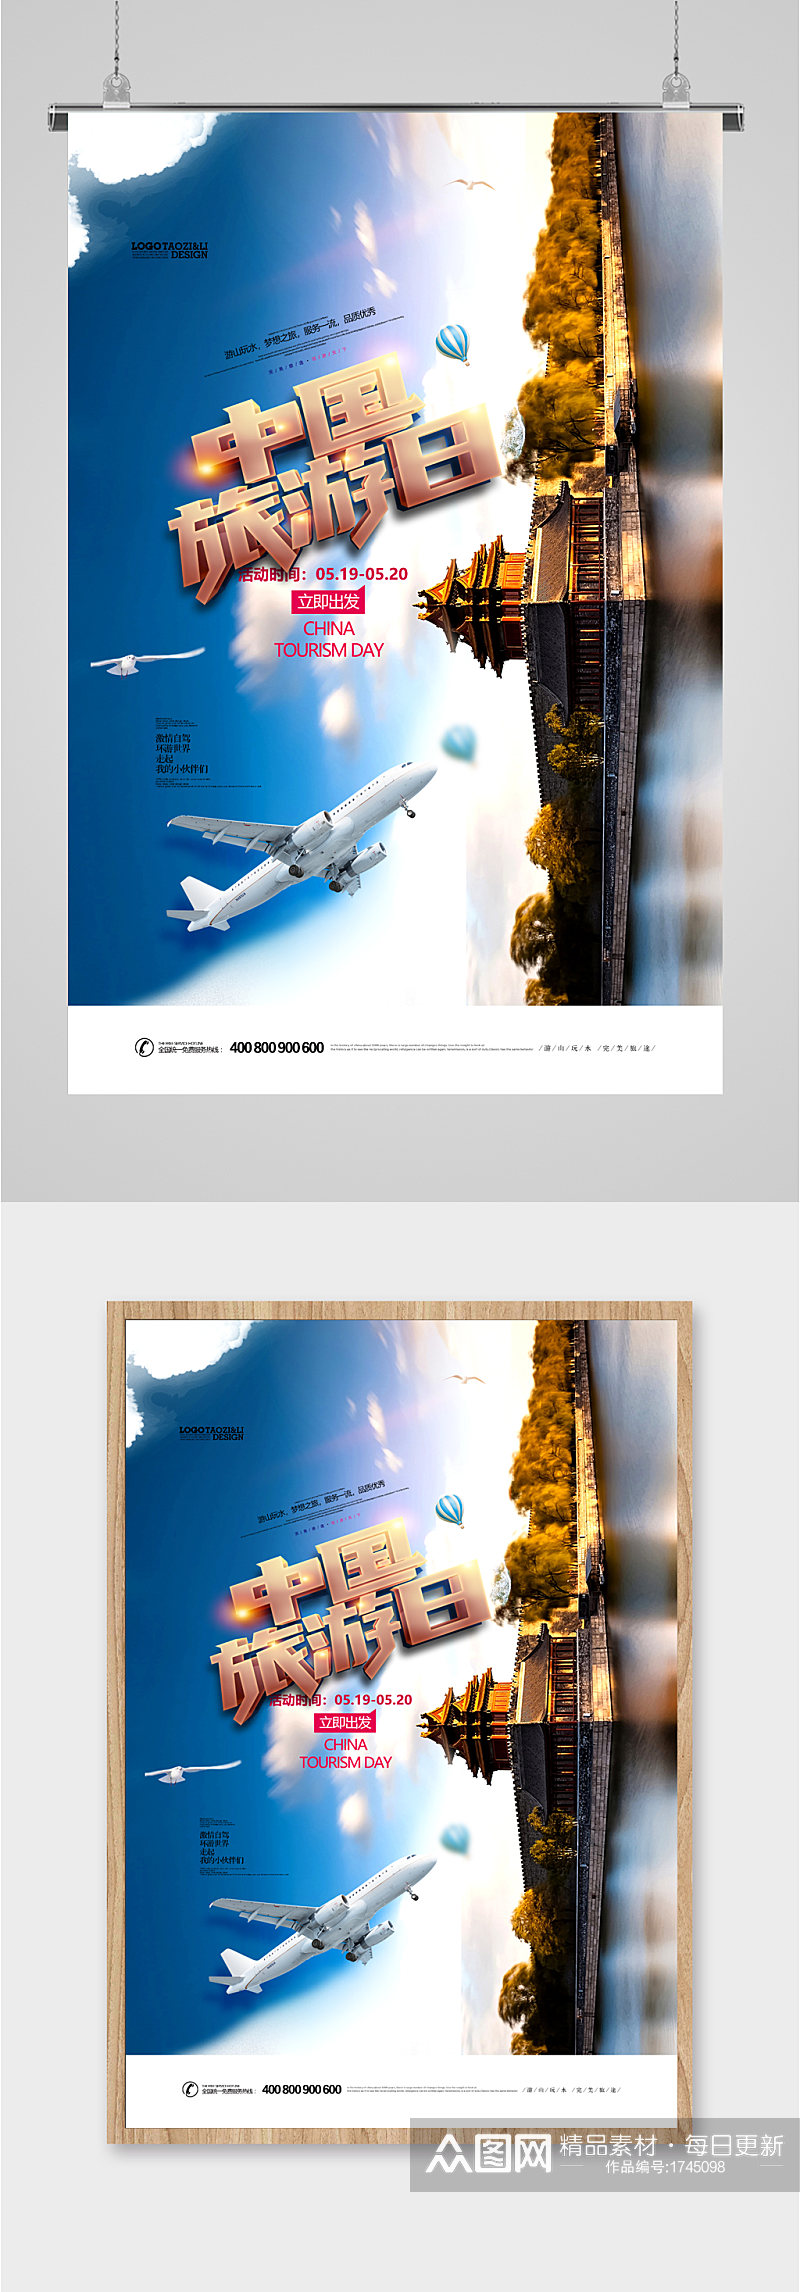 中国旅游日建筑摄影海报素材